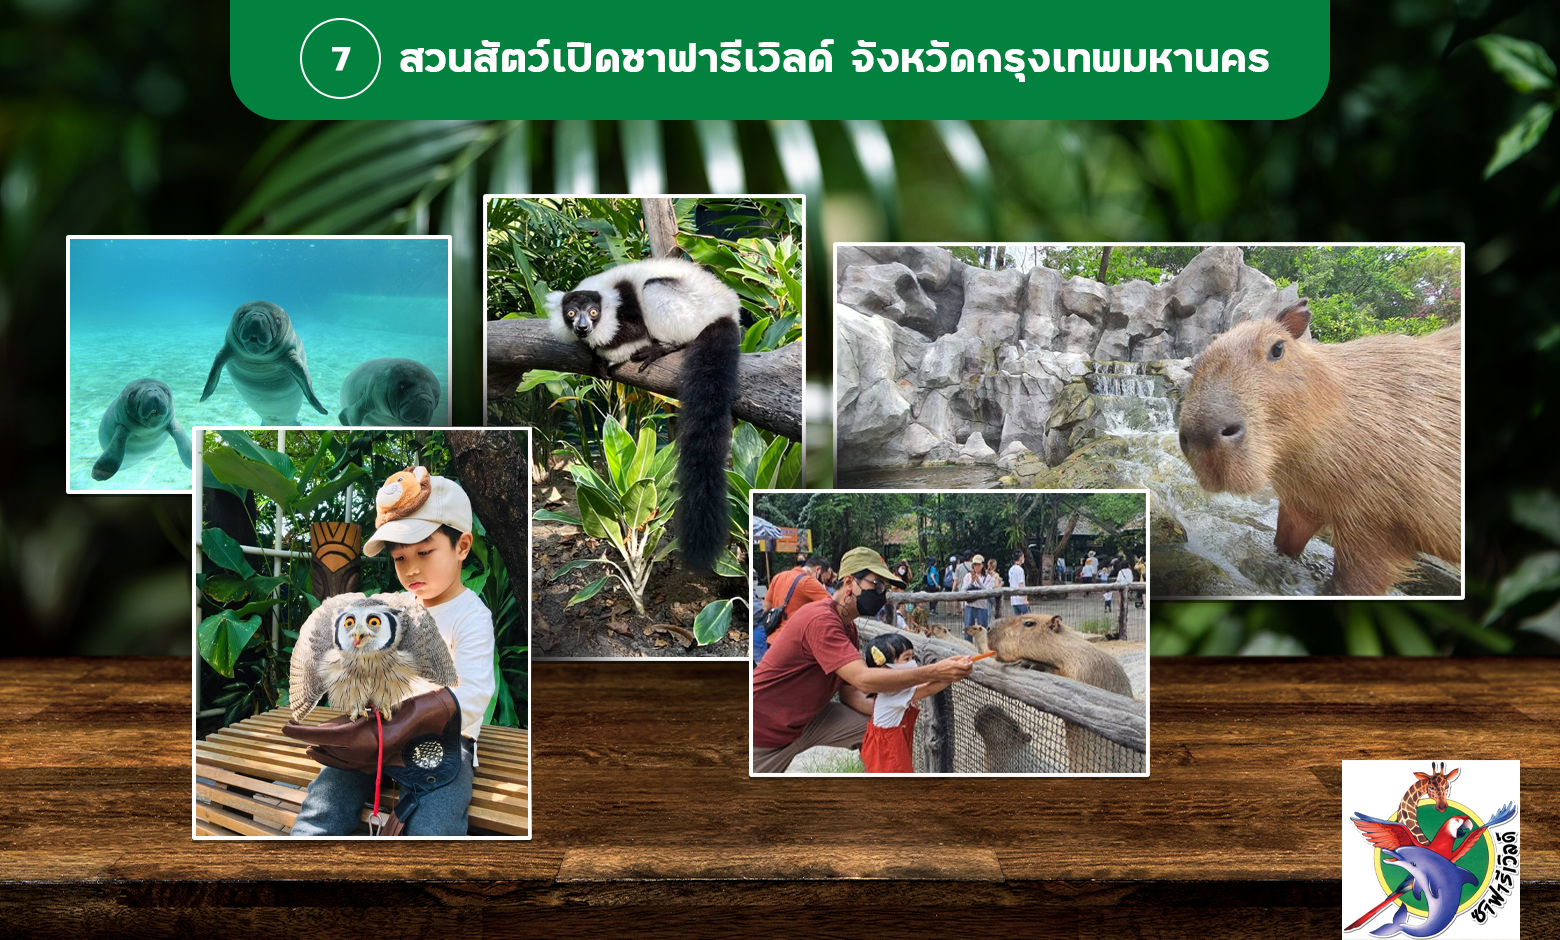 พาลูกเที่ยวเสริมพัฒนาการที่สวนสัตว์เปิดซาฟารีเวิลด์ กรุงเทพมหานคร